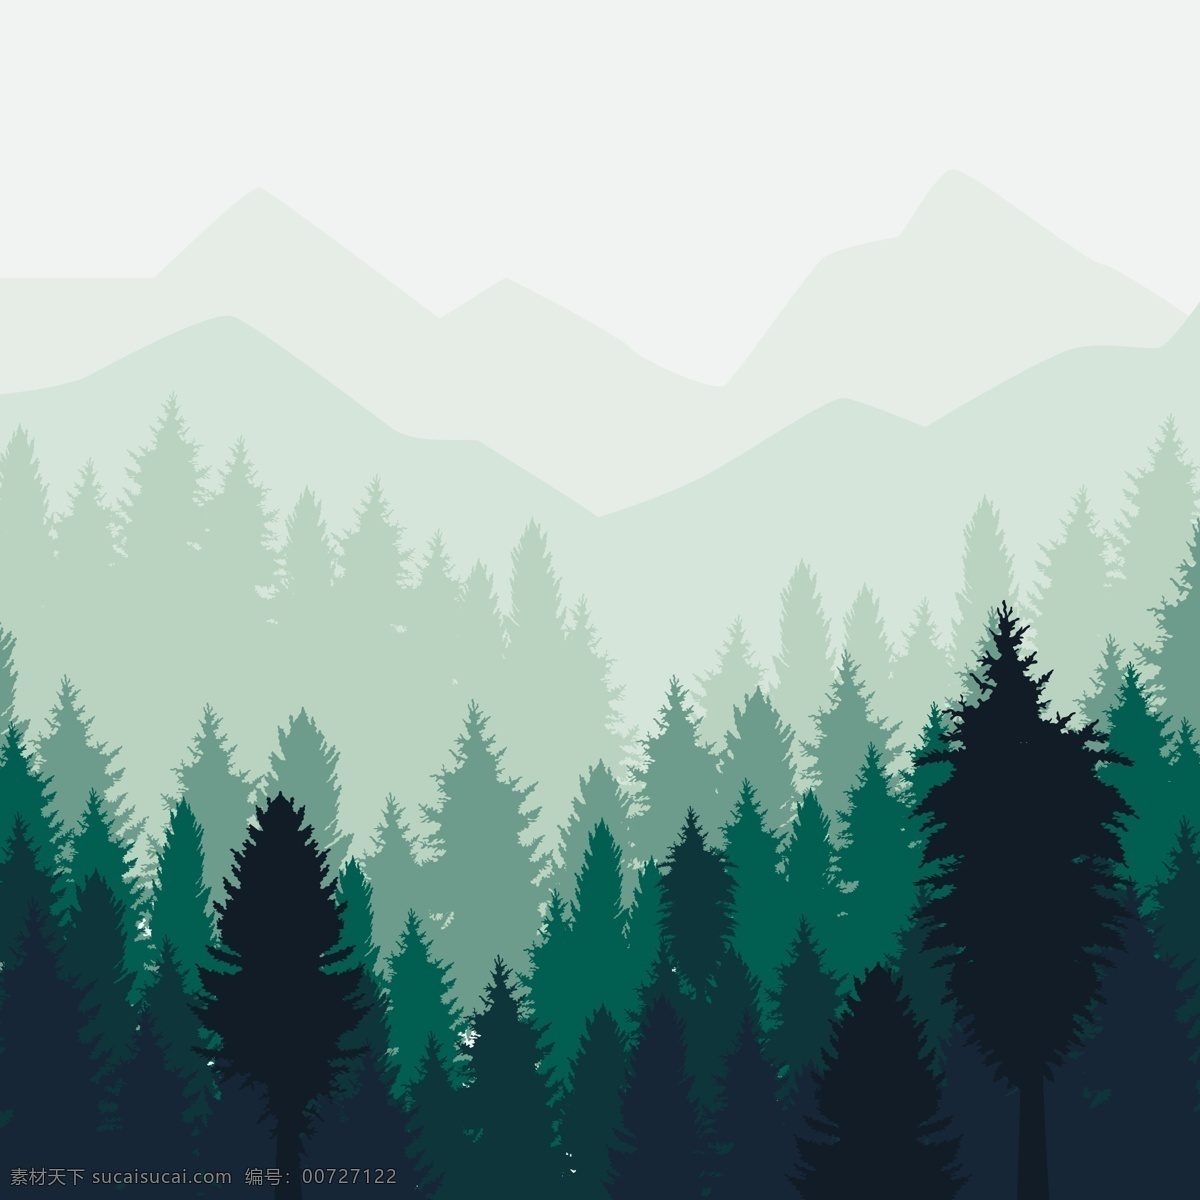 绿色 清新 森林 森林插画 矢量 矢量插画 矢量素材 树木 插画 背景